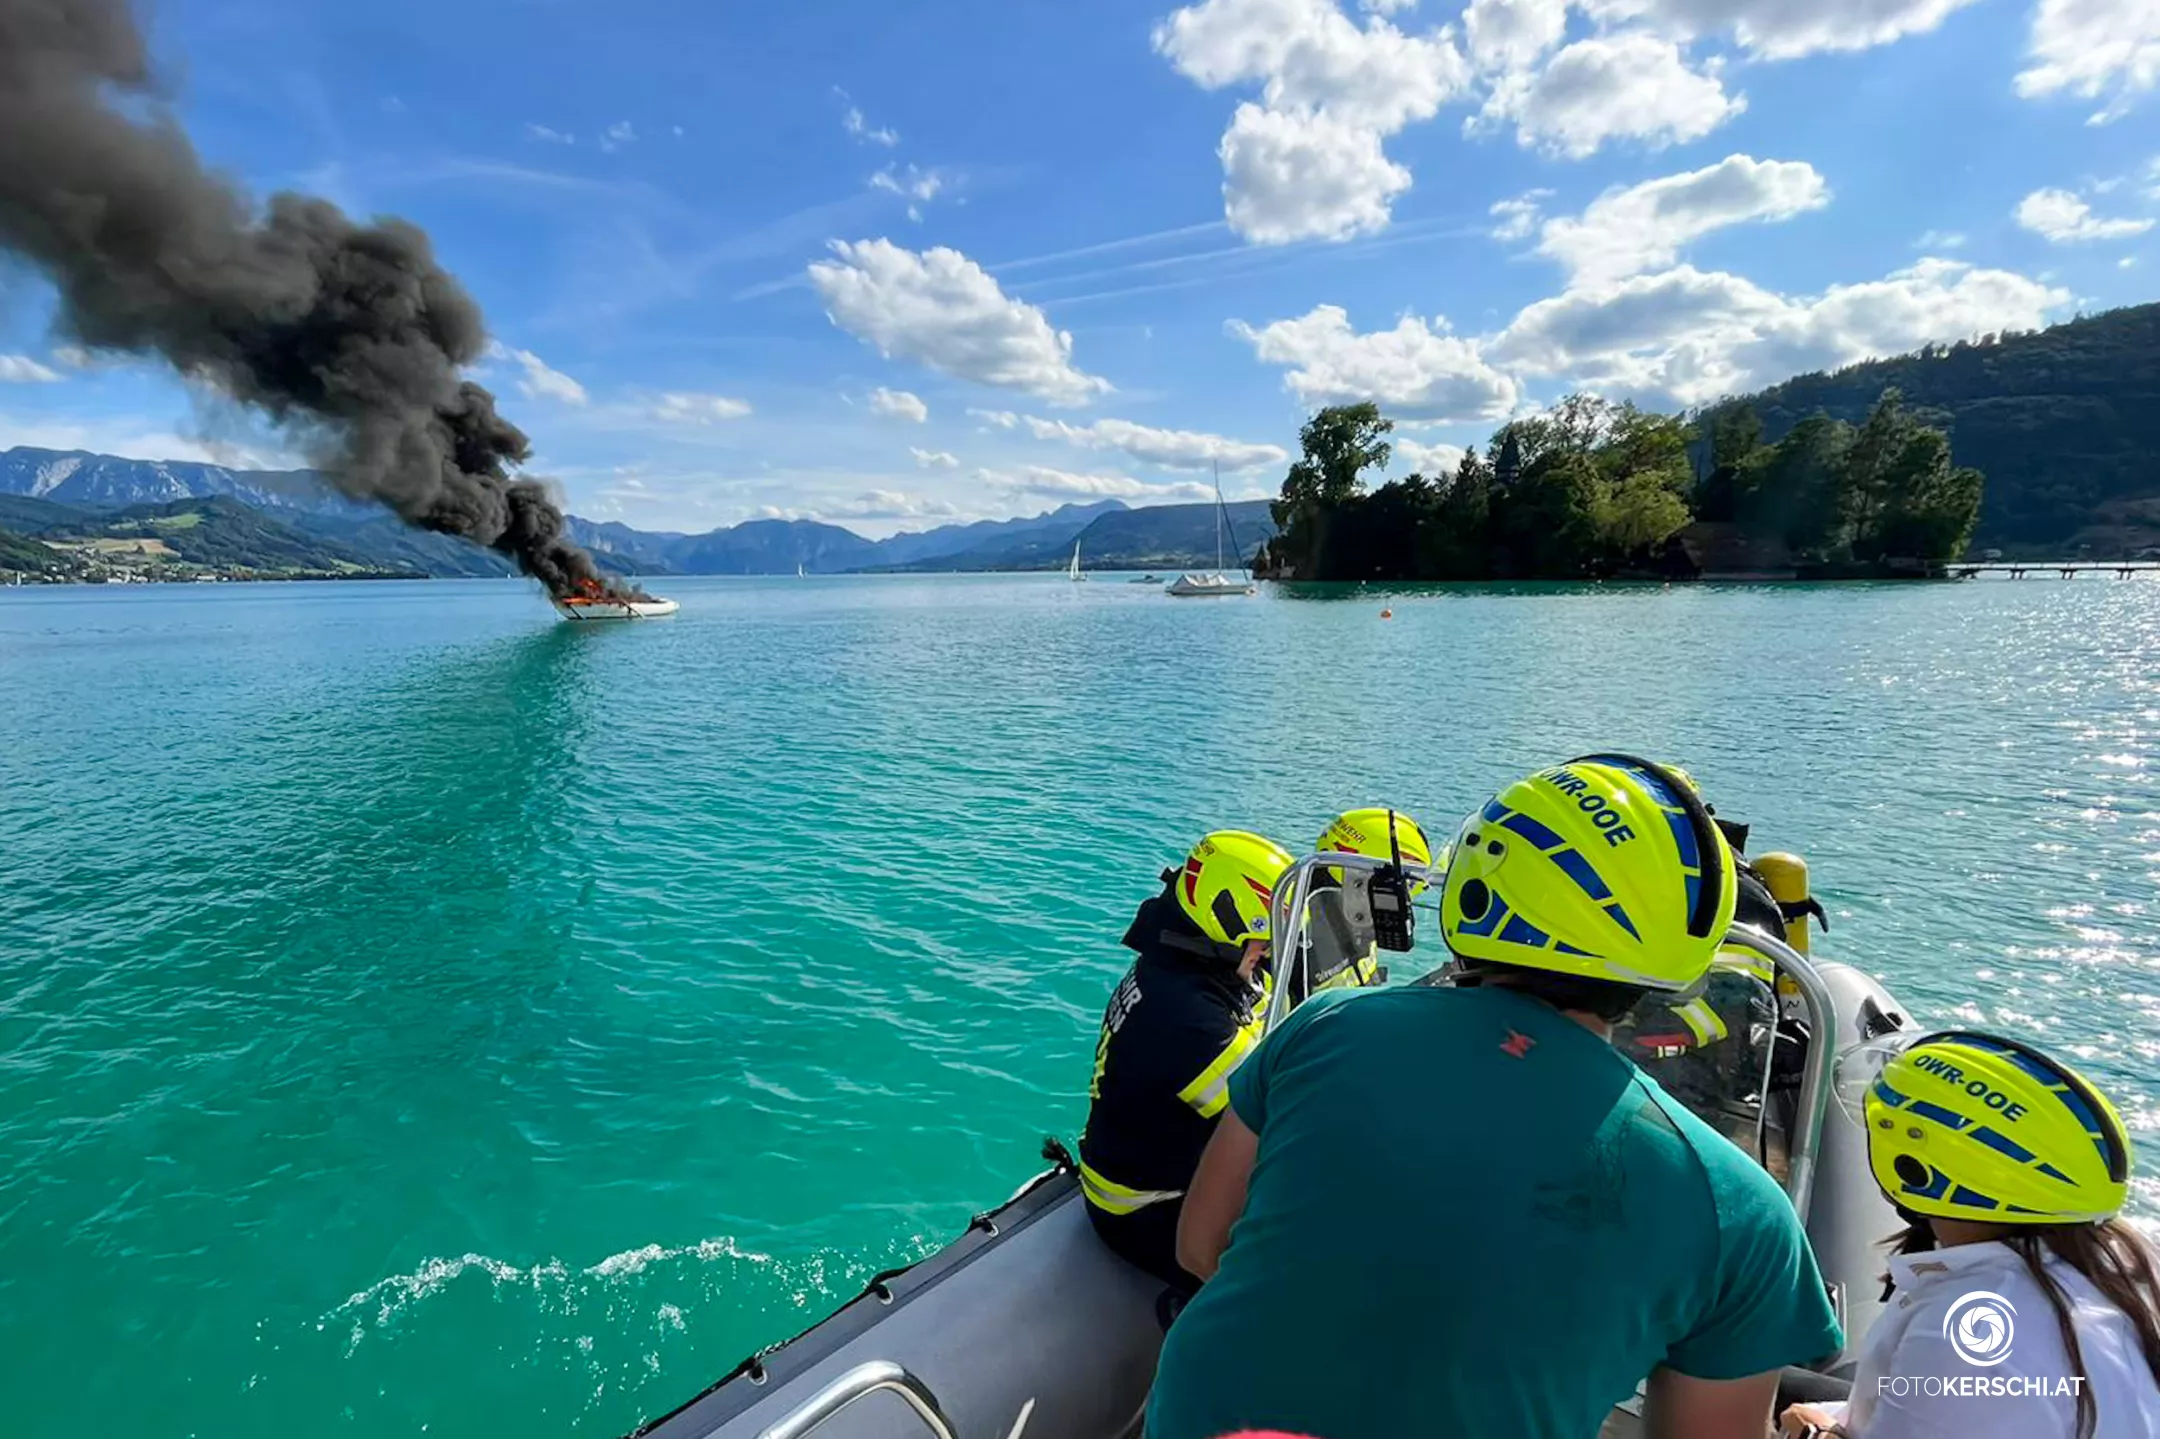 Feuer auf offenem Wasser: Boot am Attersee in Brand